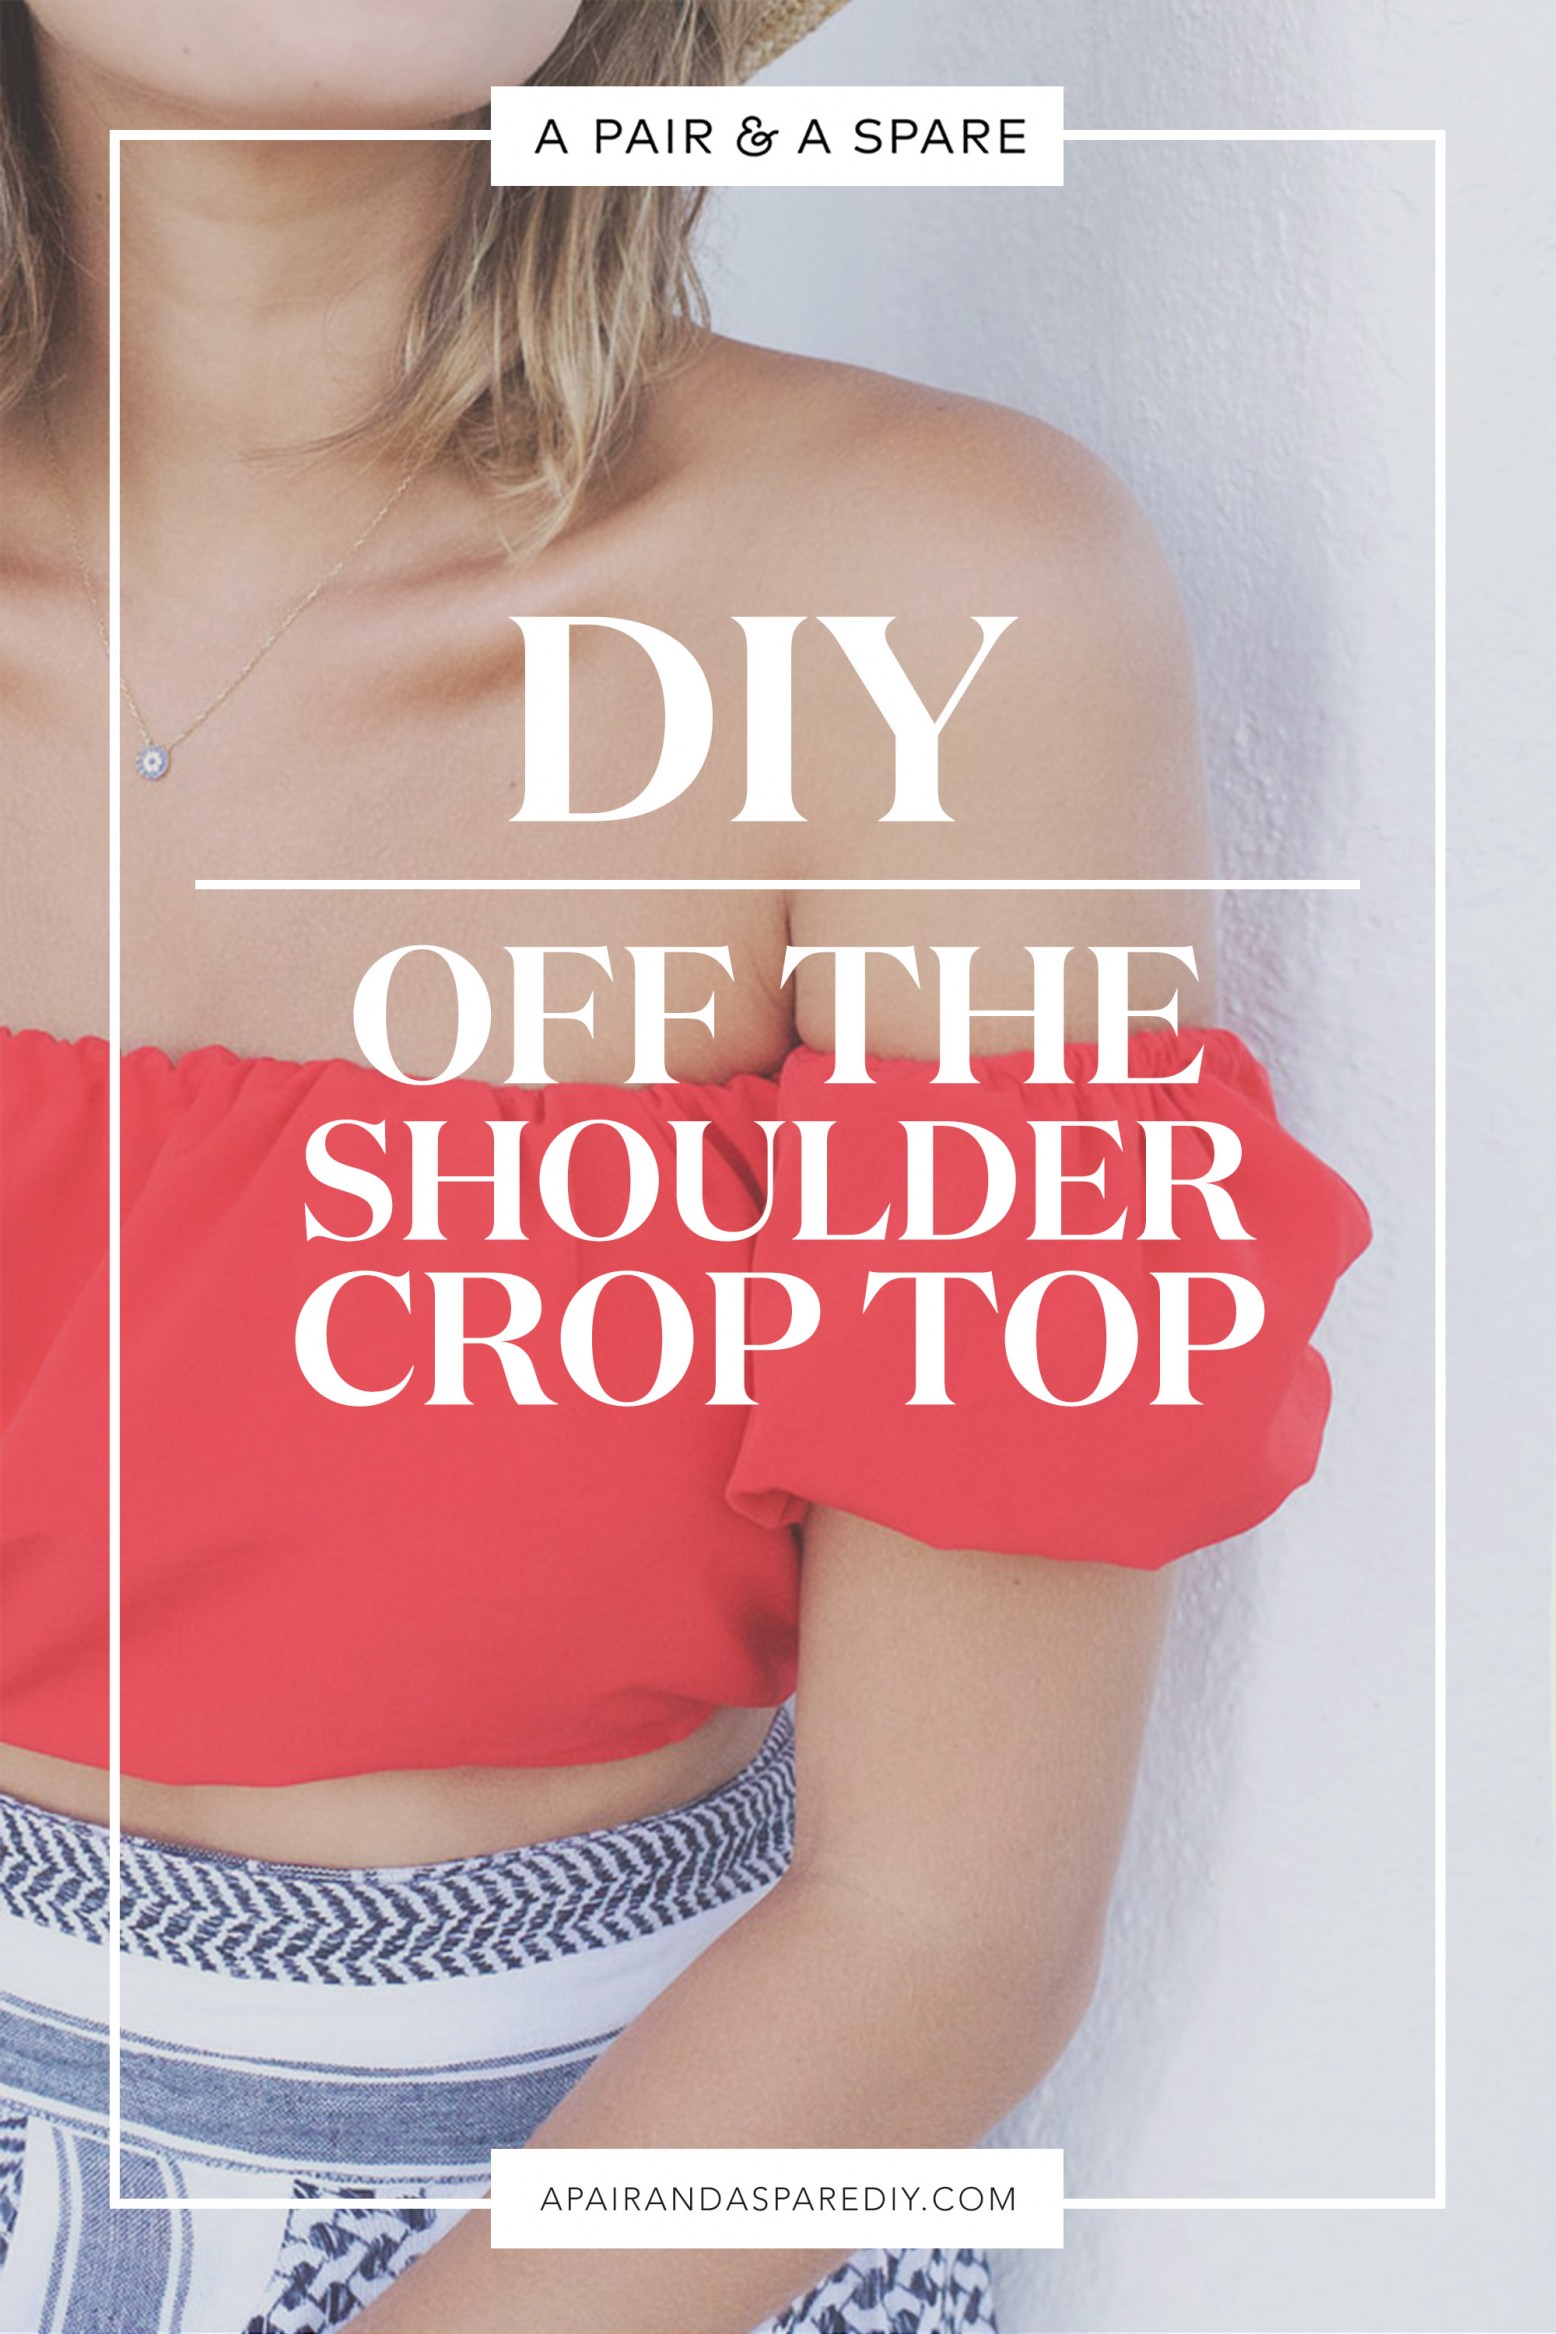 Making the JARA Off Shoulder Crop Top — Effortless Patterns